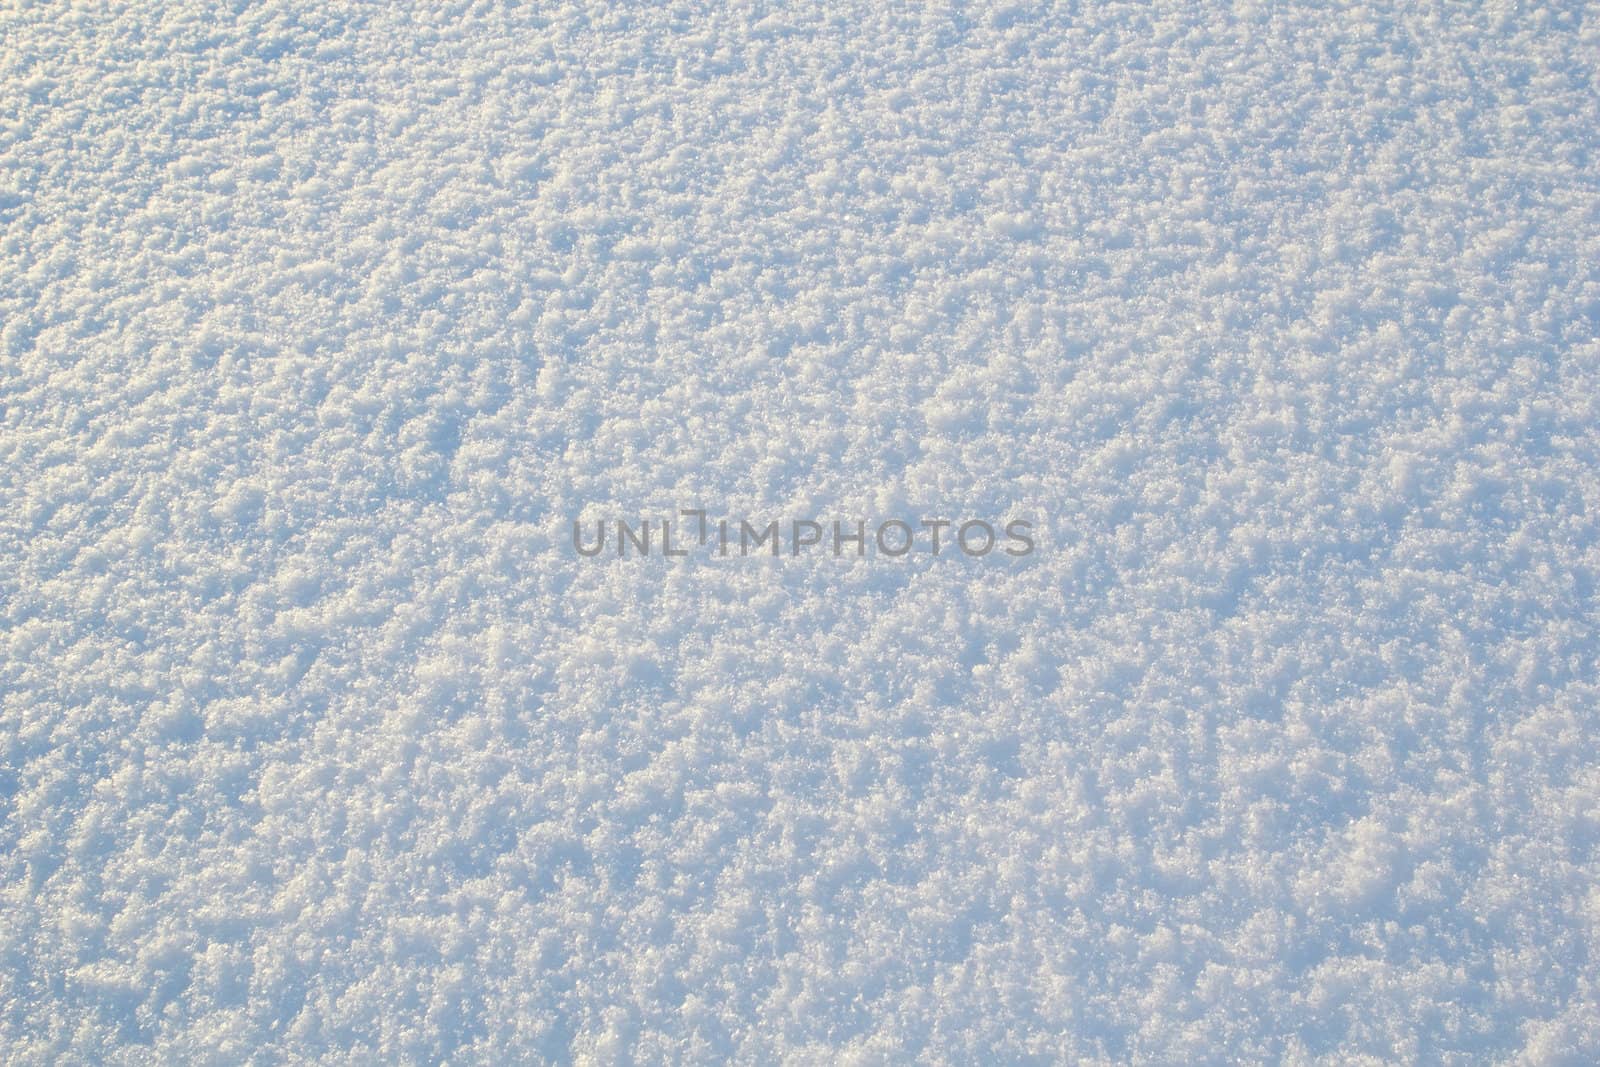 ice snow photo texture background. white freshness